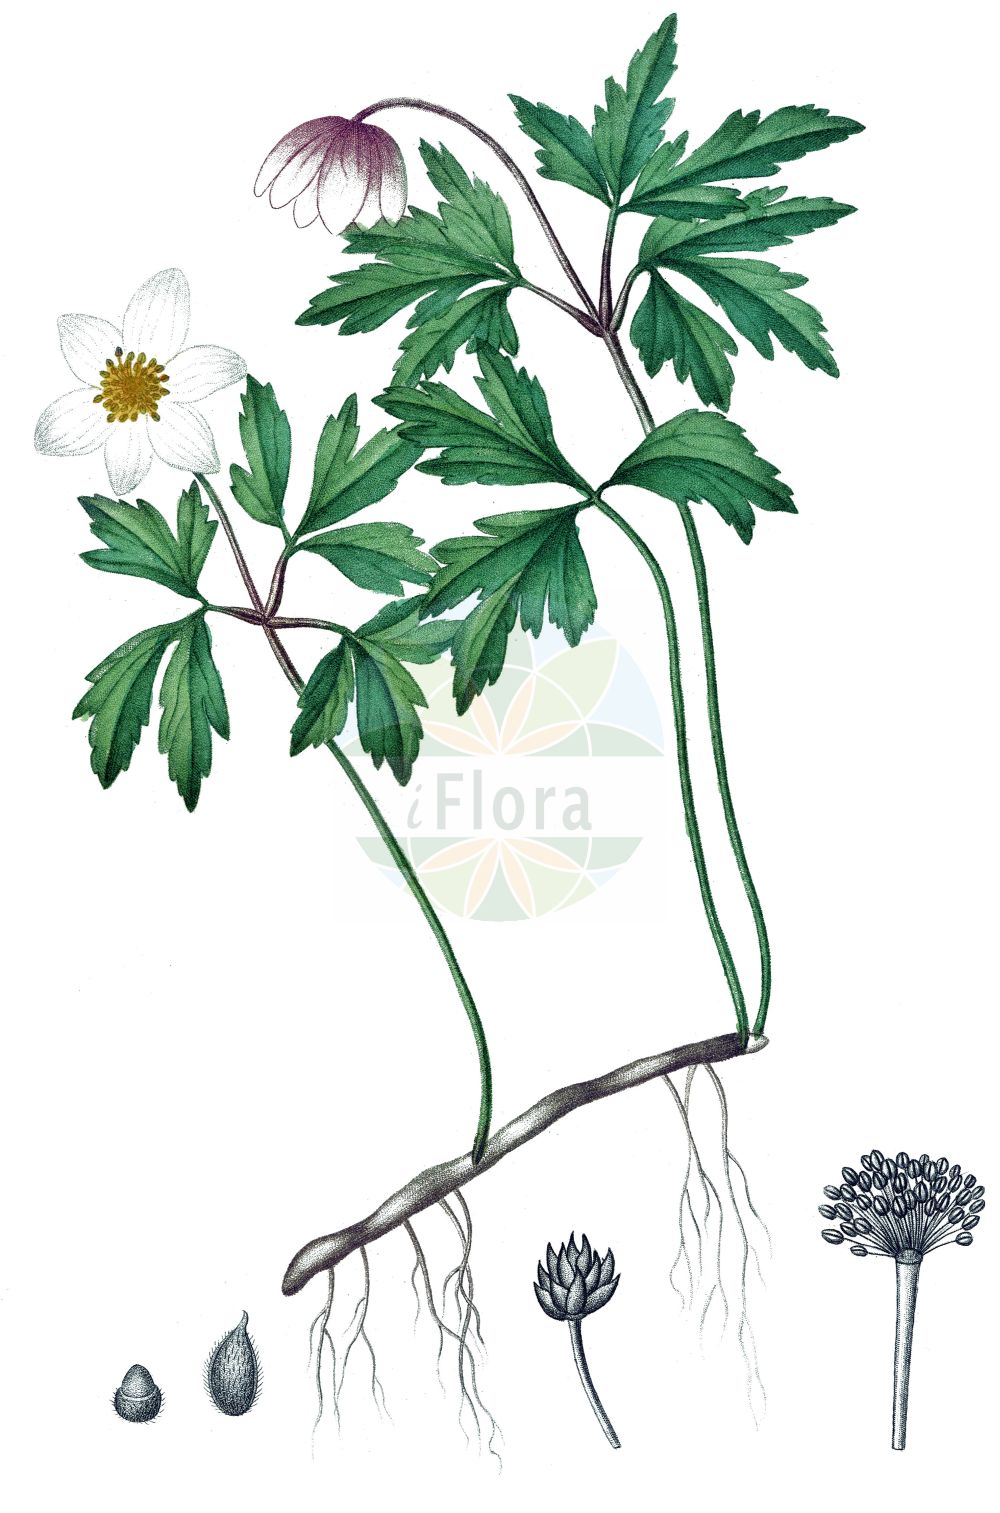 Historische Abbildung von Anemone nemorosa (Busch-Windröschen - Wood Anemone). Das Bild zeigt Blatt, Bluete, Frucht und Same. ---- Historical Drawing of Anemone nemorosa (Busch-Windröschen - Wood Anemone). The image is showing leaf, flower, fruit and seed.(Anemone nemorosa,Busch-Windröschen,Wood Anemone,Anemone nemorosa,Anemonoides nemorosa,Busch-Windroeschen,Wood Anemone,Grove Windflower,European Thimbleweed,Windflower,Anemone,Windröschen,Wind Flower,Ranunculaceae,Hahnenfußgewächse,Buttercup family,Blatt,Bluete,Frucht,Same,leaf,flower,fruit,seed,de Saint-Hilaire (1824a))